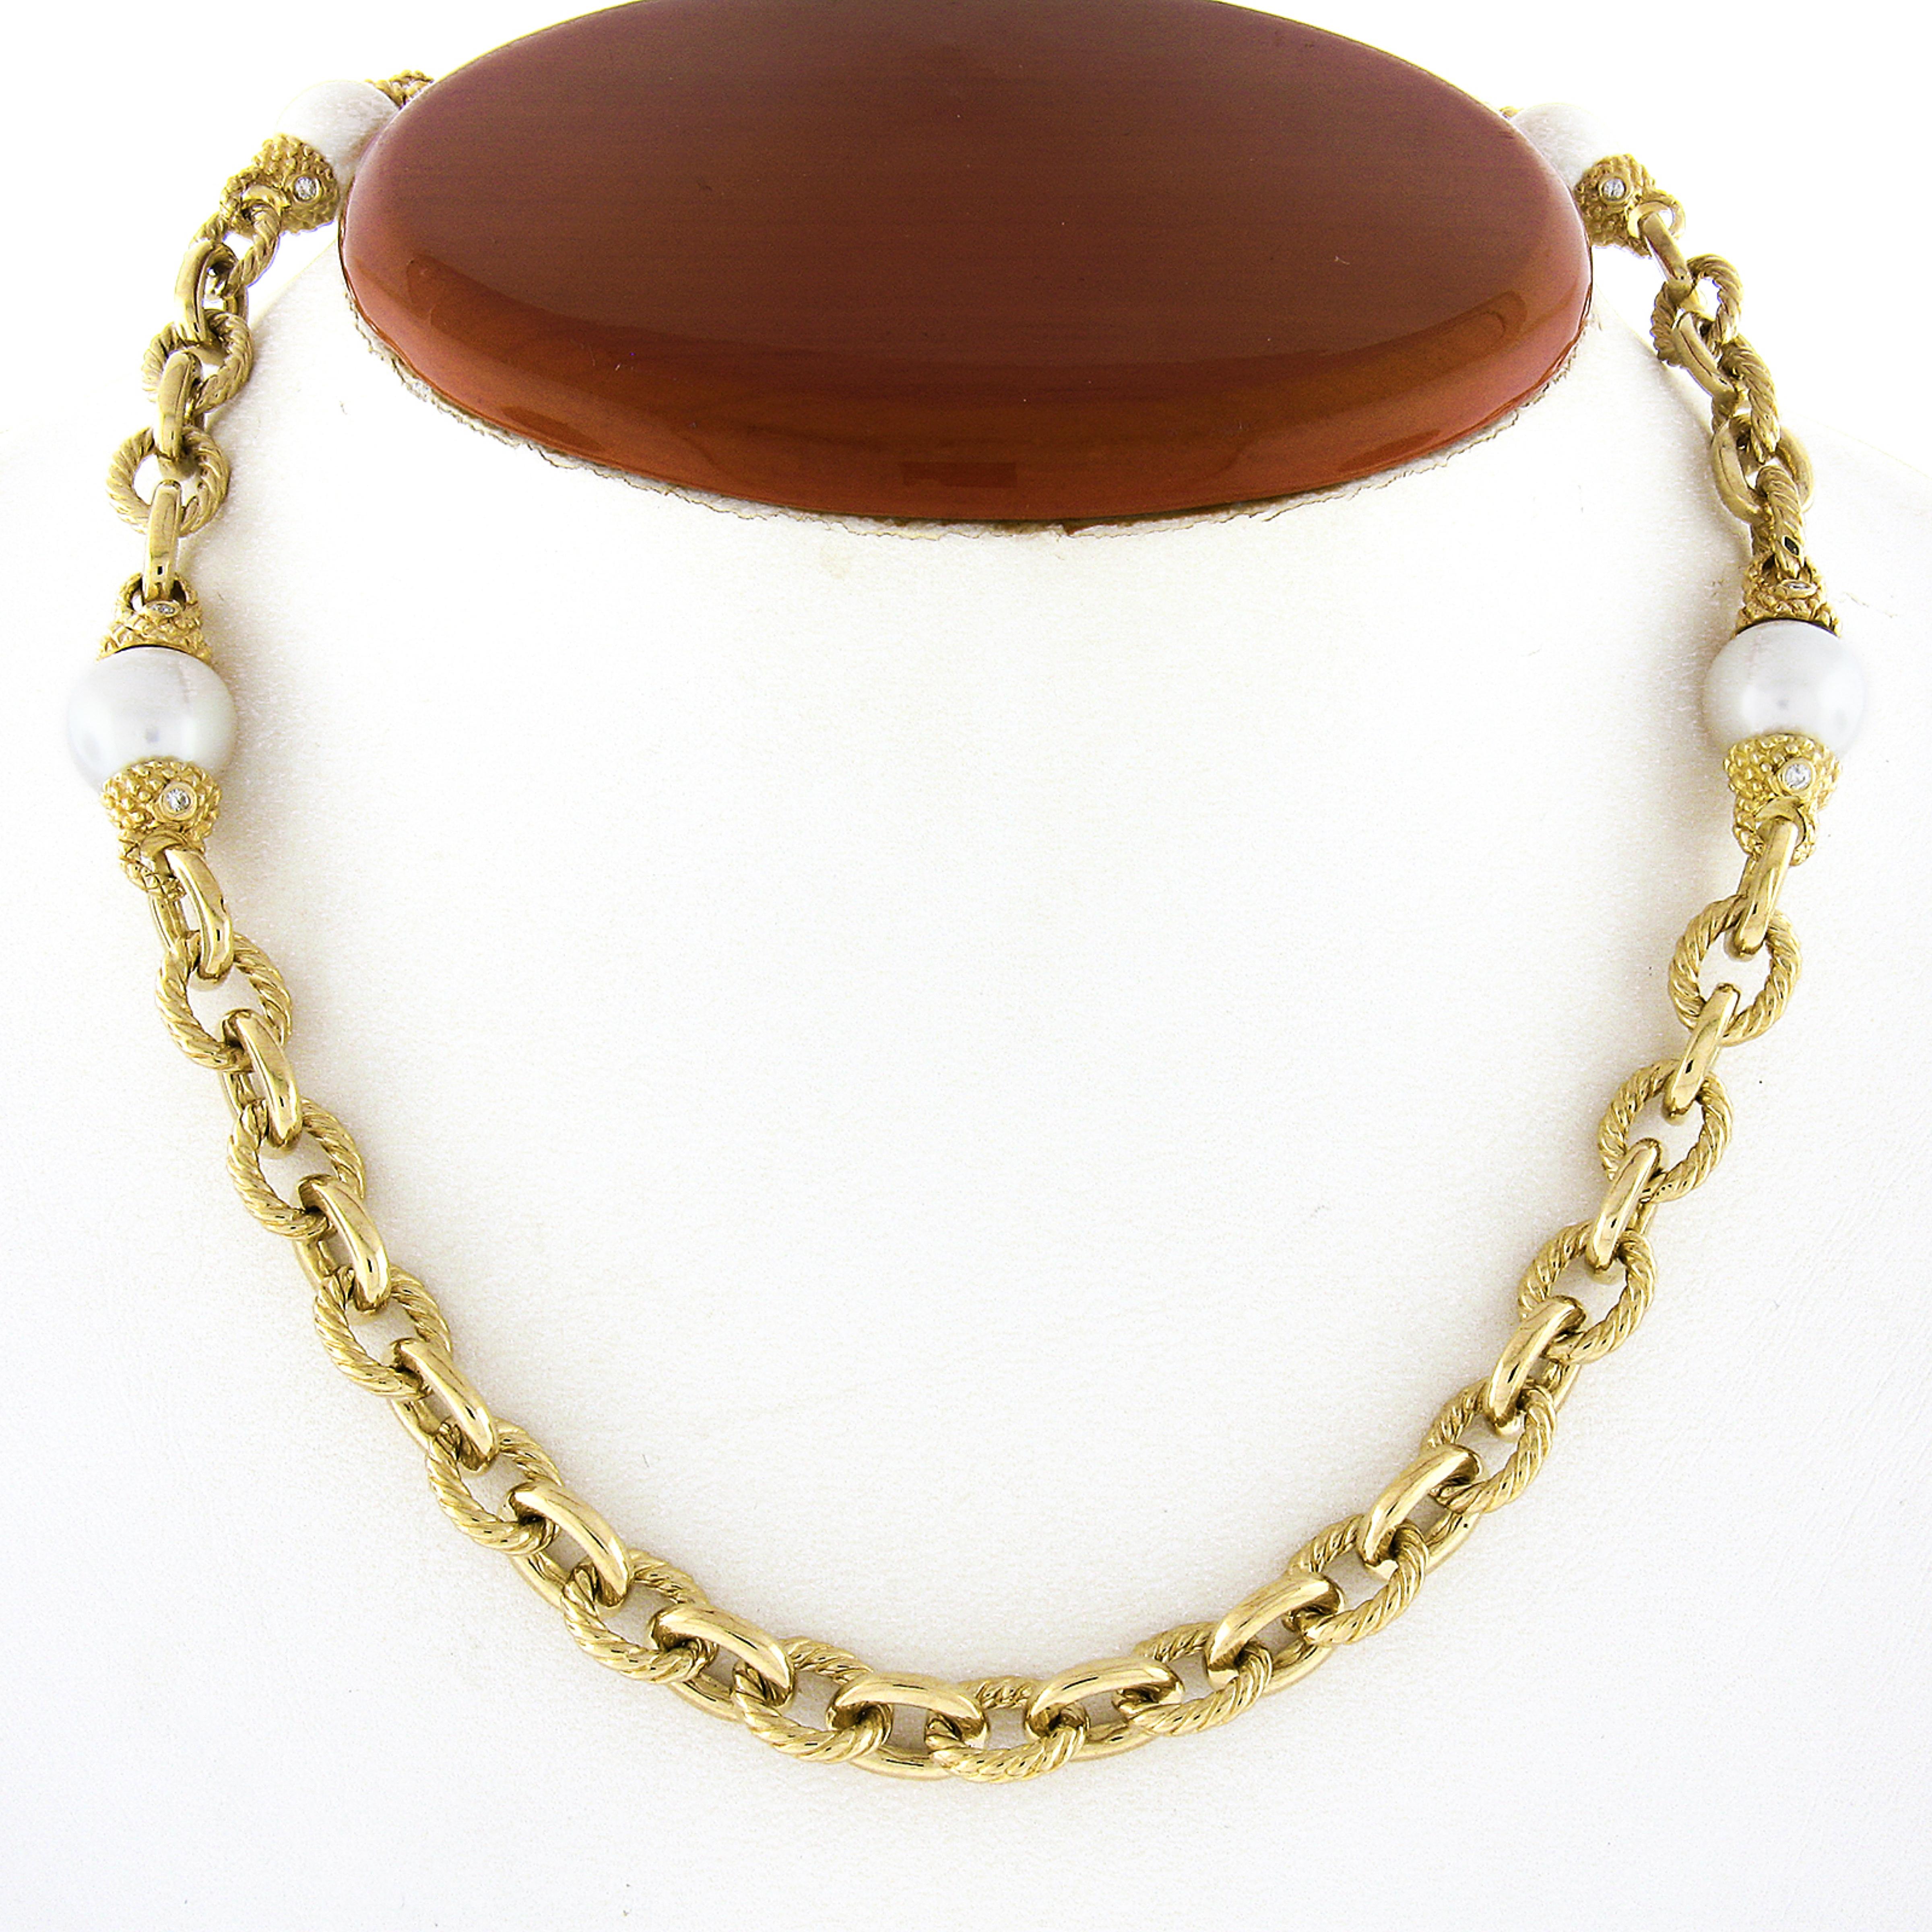 Ce collier fantaisie de très bonne facture est fabriqué en or jaune massif 14k et présente un beau design alternant des maillons en câble et des maillons à finition polie, ainsi que quatre belles sections en perles. Les perles sont très bien